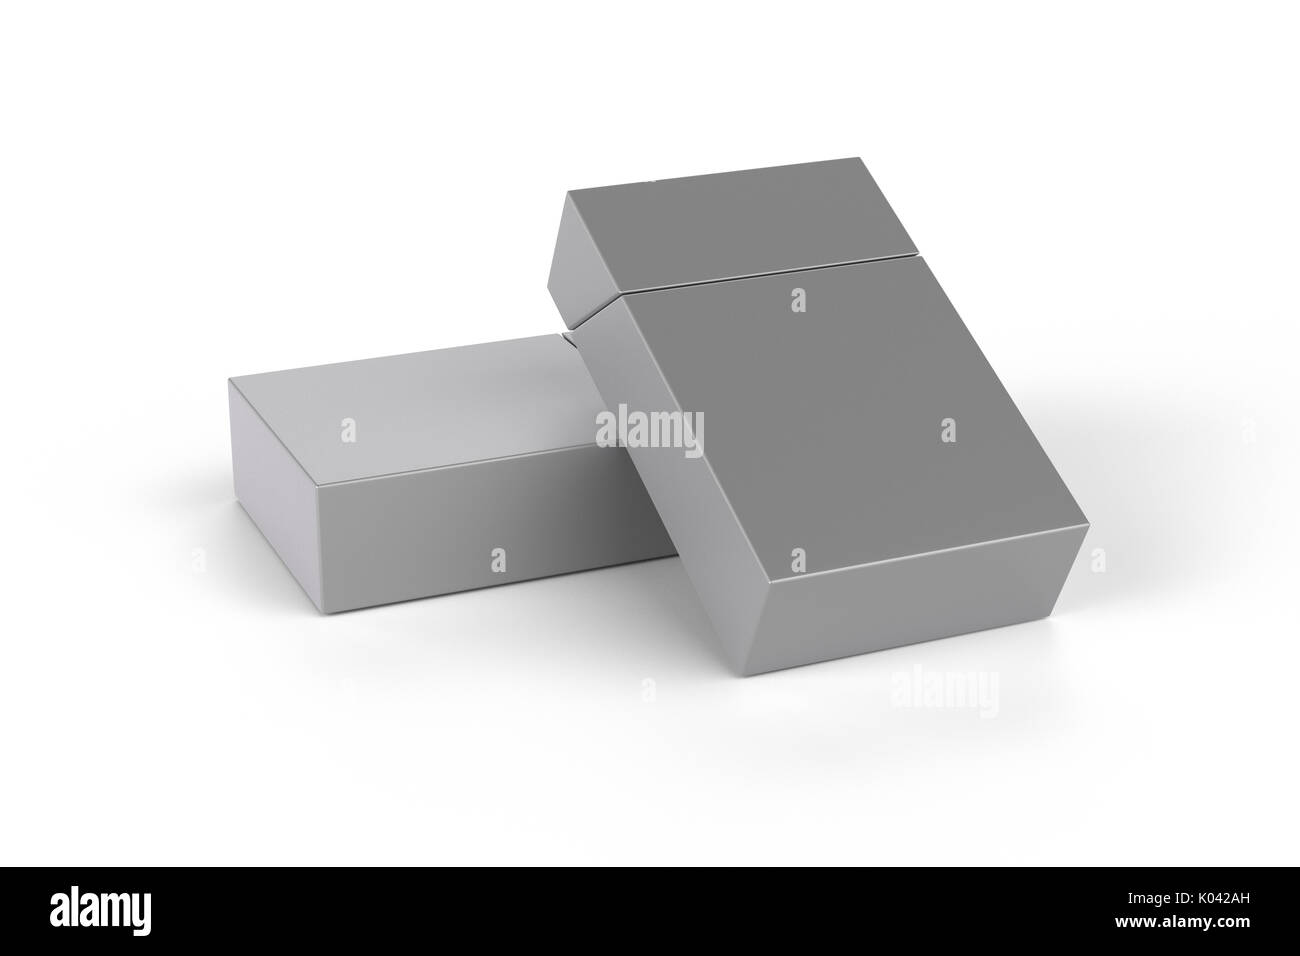 3D Render composición de dos cajas de cigarrillos king size o paquetes sobre un fondo blanco con sombra. Trazado de recorte. Plantilla para su diseño. Foto de stock